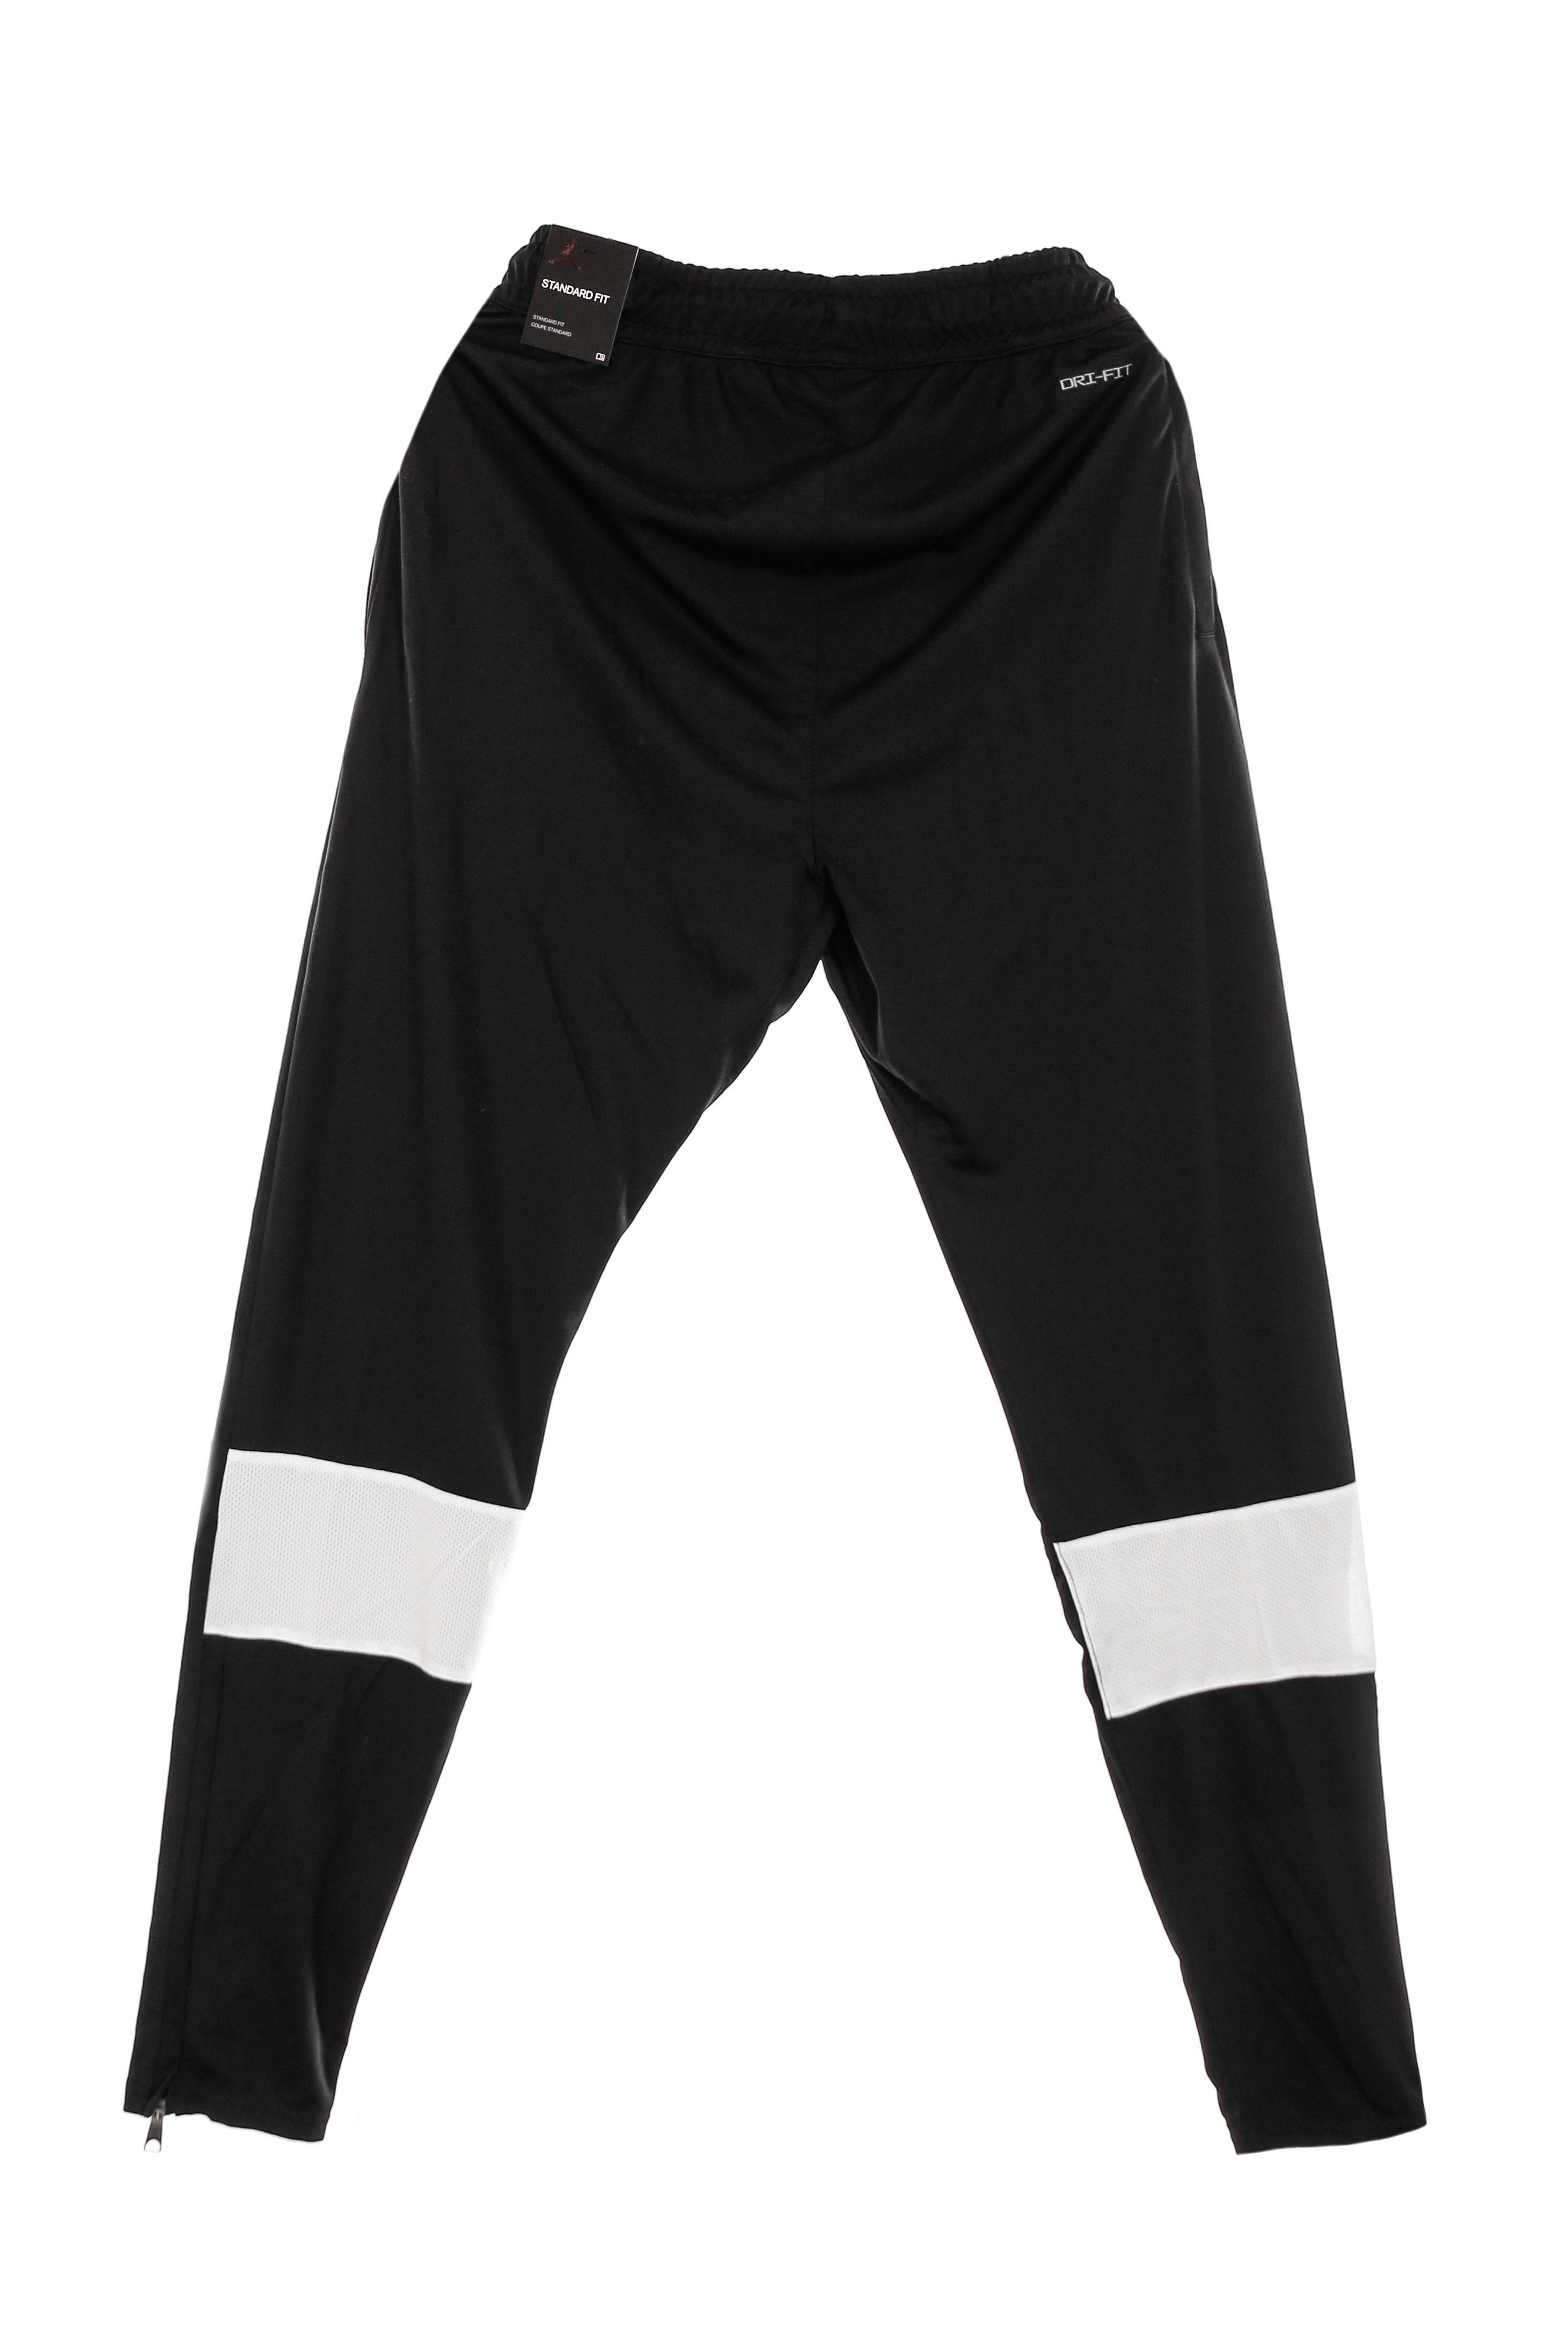 MJ Dri-fit Air Pant Men's Tracksuit Pants Black/white/white